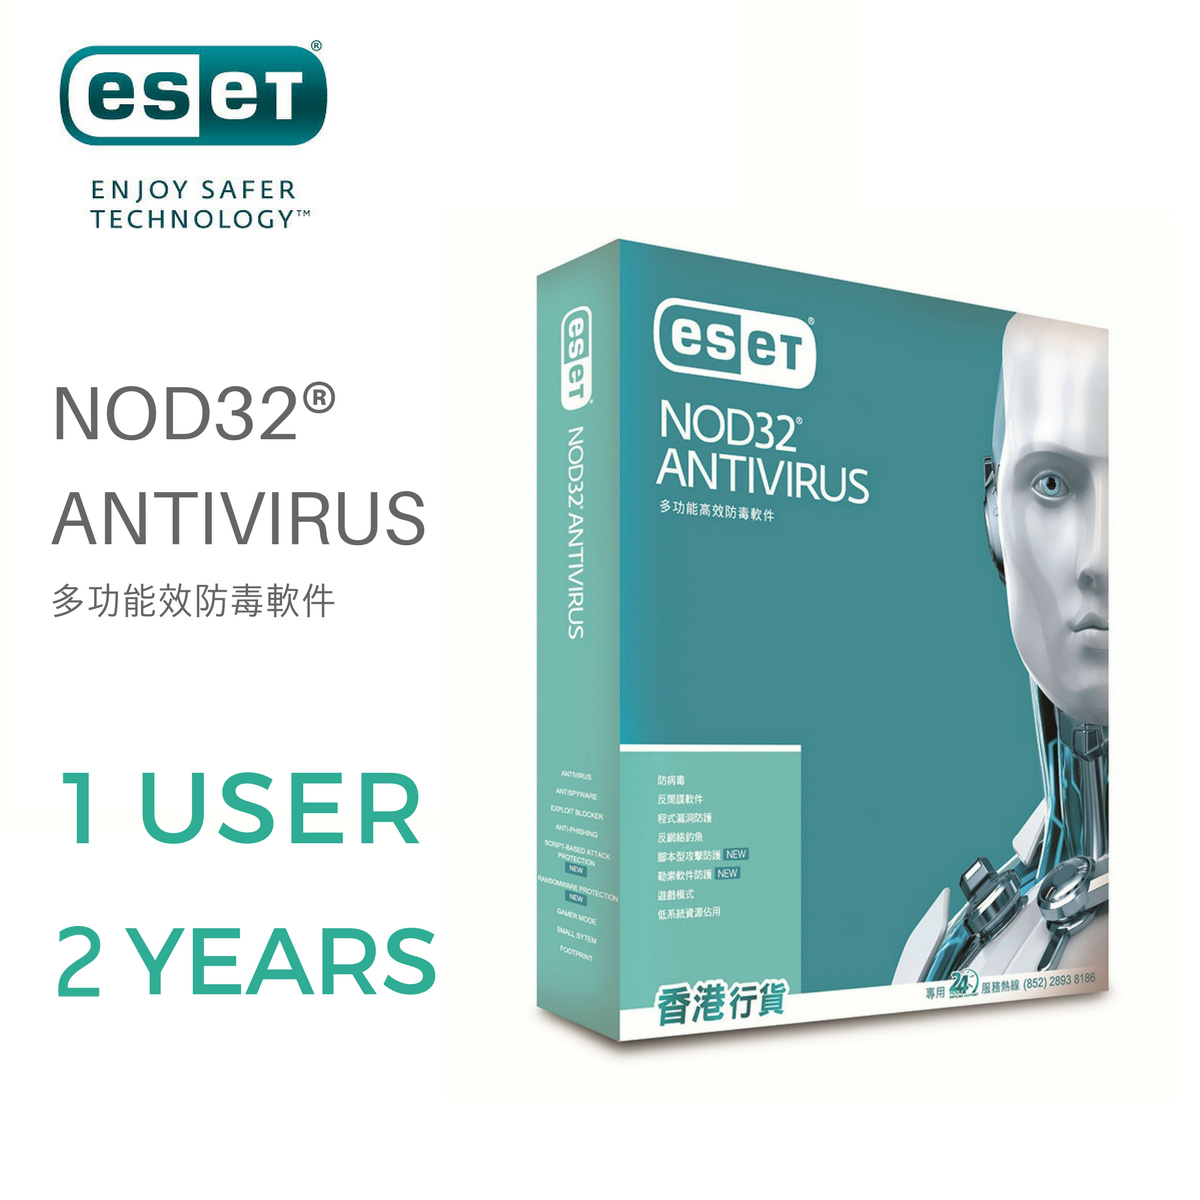 ESET NOD32 ANTIVIRUS 防毒軟件  1用戶2年 盒裝版